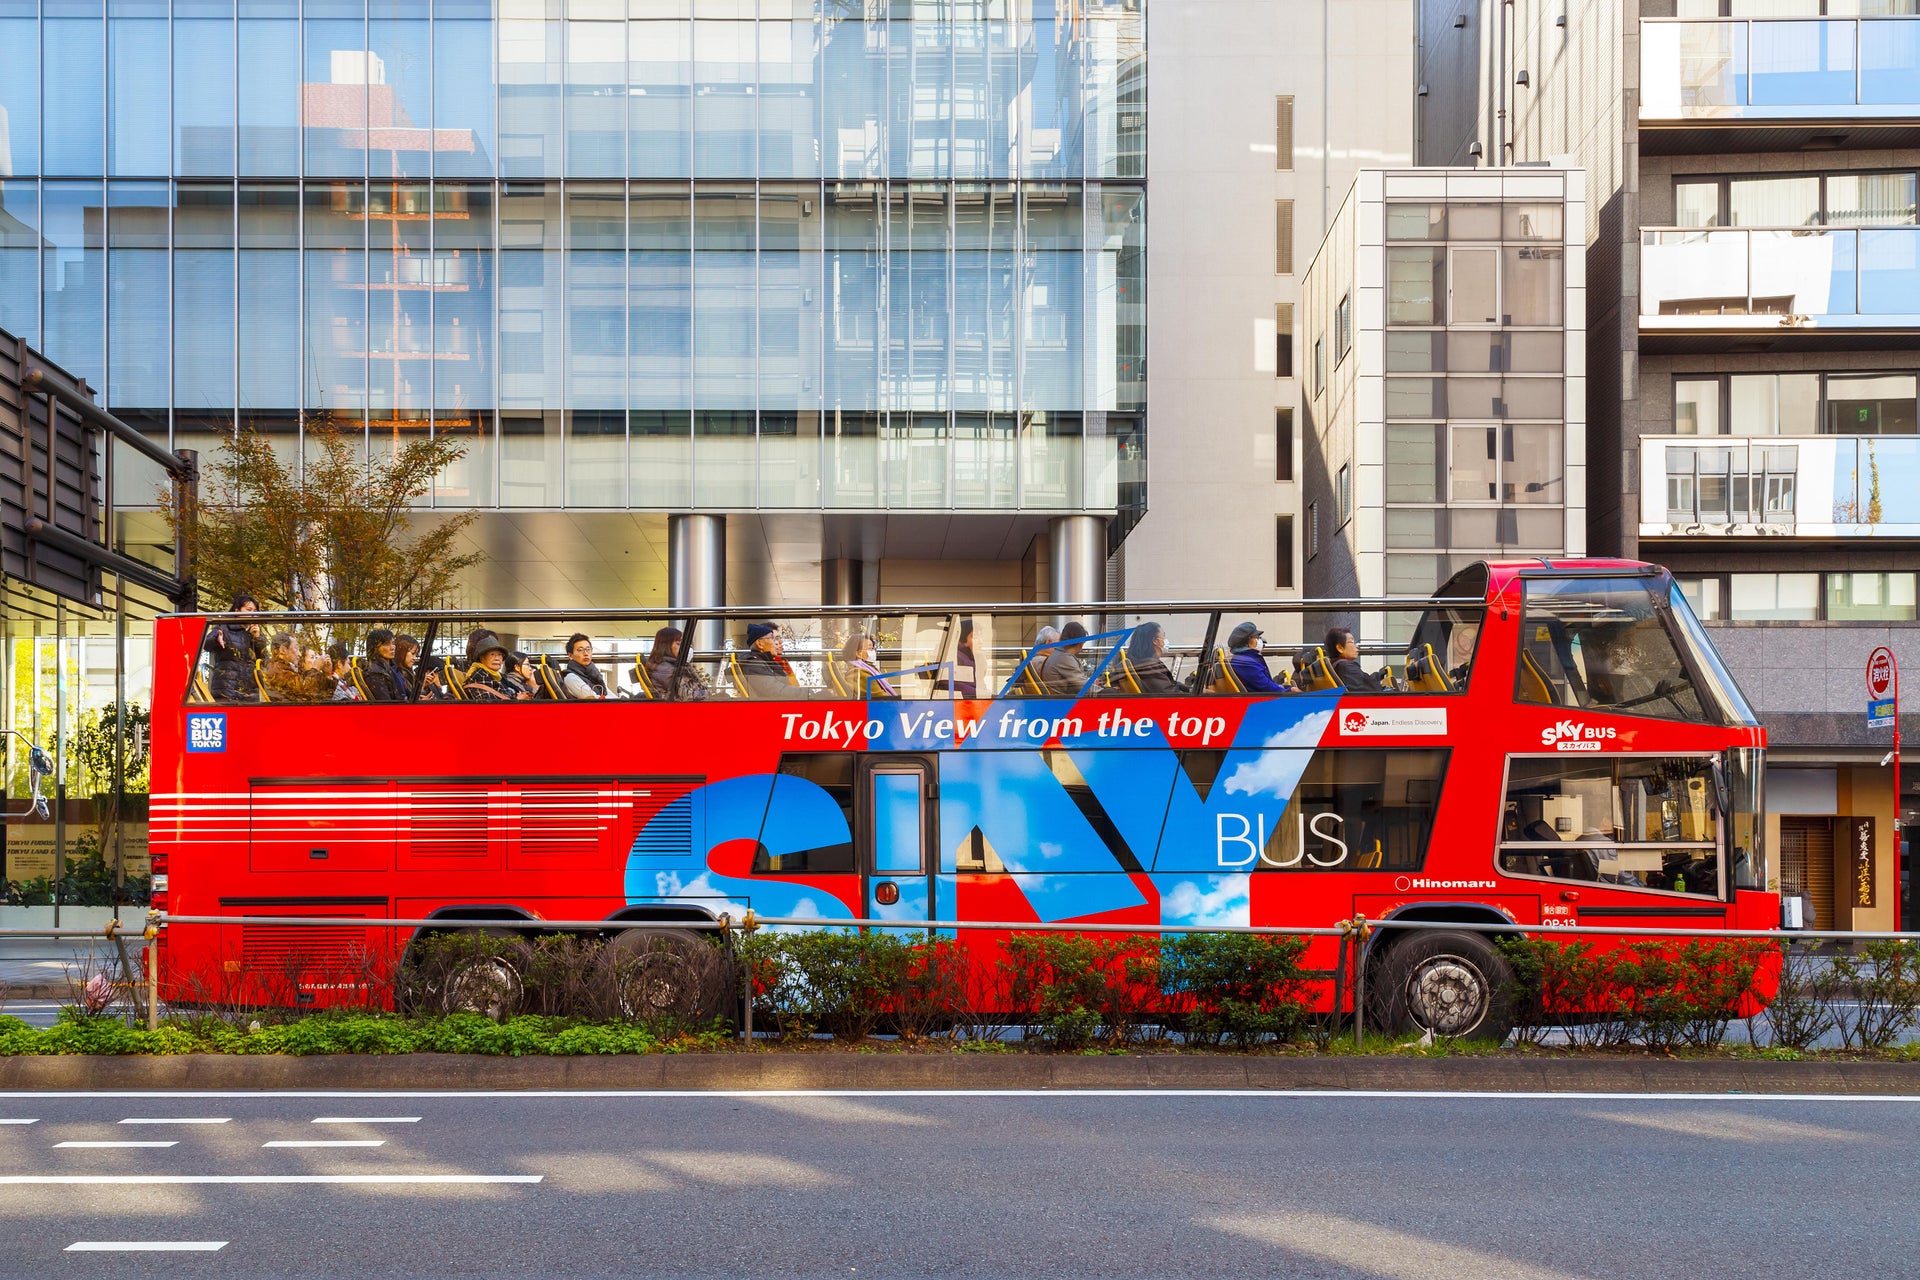 Autobus turistico di Tokyo